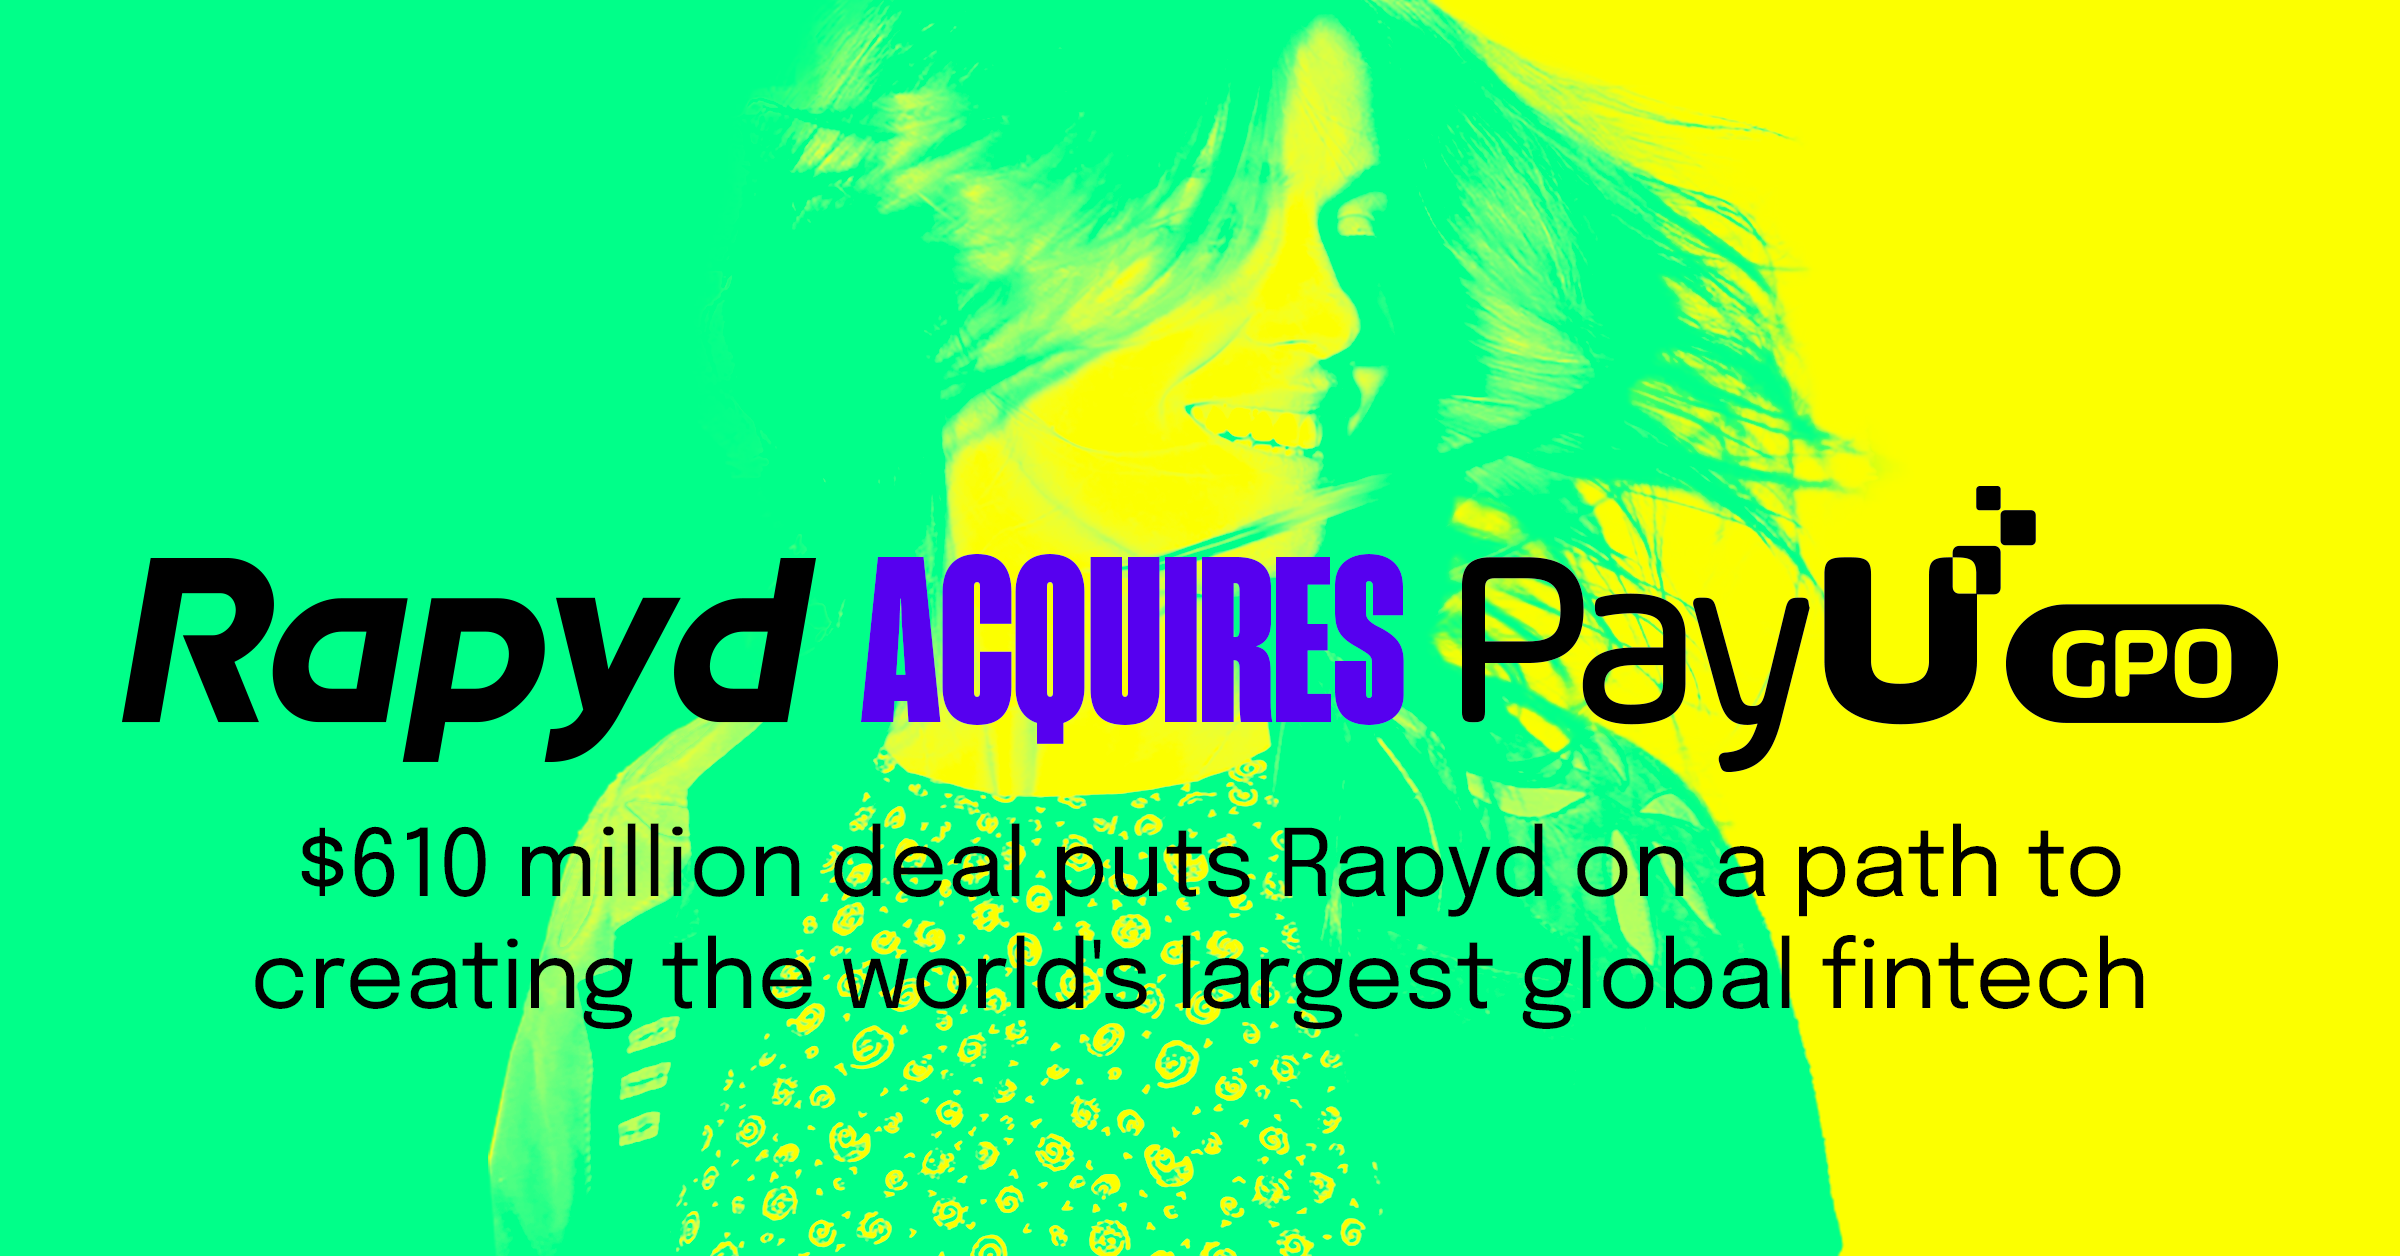 Rapyd and PayU GPO logos.